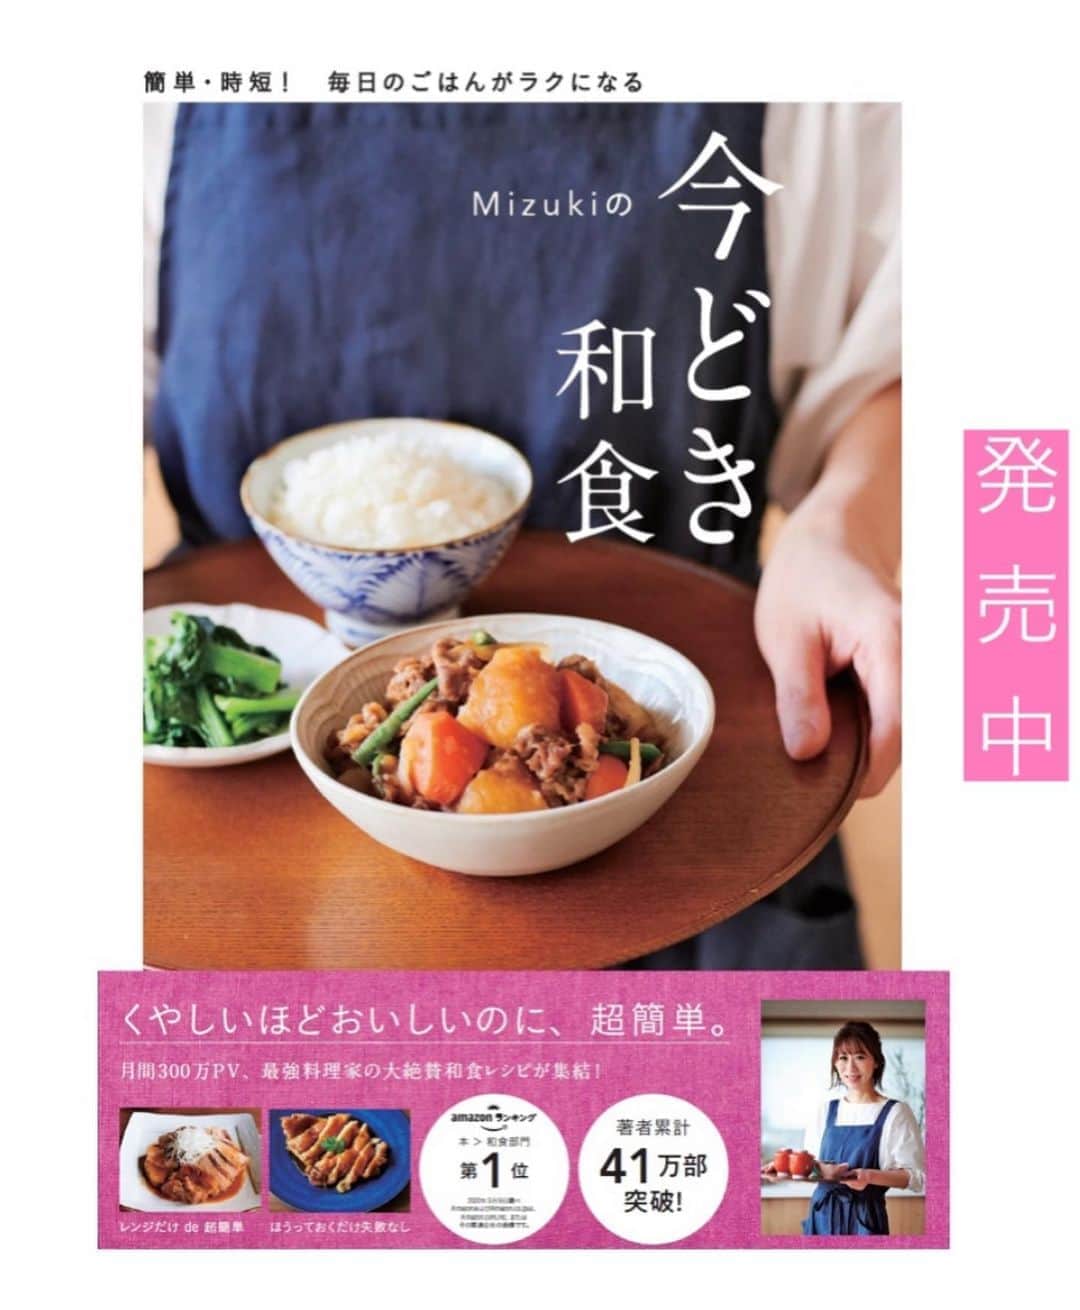 Mizuki【料理ブロガー・簡単レシピ】さんのインスタグラム写真 - (Mizuki【料理ブロガー・簡単レシピ】Instagram)「・﻿ 【レシピ】ーーーーーーーーー﻿ ♡レモンバター醤油チキン♡﻿ ーーーーーーーーーーーーーー﻿ ﻿ ﻿ ﻿ おはようございます(*^^*)﻿ ﻿ 今日ご紹介させていただくのは﻿ レモンバター醤油チキン♡﻿ カリッと焼いた鶏肉に﻿ さっぱりコクのあるソースが相性抜群！﻿ ごはんにもパンにも合いますよ〜♩﻿ ﻿ 今回は鶏もも肉を使用しましたが﻿ むね肉でも作れます(*^^*)﻿ (作り方はポイントに記載☆)﻿ とっても簡単にできるので﻿ よかったらお試し下さいね♩﻿ ﻿ ﻿ ﻿ ーーーーーーーーーーーーーーーーーーーー﻿ 【2人分】﻿ 鶏もも肉...大1枚(300g)﻿ 塩こしょう...少々﻿ 片栗粉...適量﻿ サラダ油...大1﻿ ●醤油・みりん・酒...各大1﻿ ●レモン汁...大1/2﻿ ●にんにくチューブ...2cm﻿ バター...15g﻿ ﻿ 1.鶏肉は3cm大に切り、塩こしょうを振って片栗粉をまぶす。●は合わせておく。﻿ 2.フライパンにサラダ油を中火で熱して鶏肉を焼く。焼き色が付いたら裏返し、フタをして弱めの中火で3分蒸し焼きにする。﻿ 3.余分な油を拭き取り、●とバターを加えて煮からめる。﻿ ーーーーーーーーーーーーーーーーーーーー﻿ ﻿ ﻿ ﻿ 《ポイント》﻿ ♦︎鶏むね肉で作る場合は、全体をフォークで刺して1cm厚さの削ぎ切りにして下さい♩﻿ ♦︎酸味は控えめです♩﻿ ﻿ ﻿ ﻿ ﻿ ﻿ ＿＿＿＿＿＿＿＿＿＿＿＿＿＿＿＿＿＿＿﻿ 📕7刷重版しました📕﻿ 簡単・時短！ 毎日のごはんがラクになる﻿ ✨🦋 【 #Mizukiの今どき和食 】🦋✨﻿ ＿＿＿＿＿＿＿＿＿＿＿＿＿＿＿＿＿＿＿﻿ なるべく少ない材料で﻿ 手間も時間も省きながら﻿ 簡単にできるおいしい和食レシピ♩﻿ 簡単に失敗なくマスターできる一冊で﻿ もっと気軽に、カジュアルに﻿ 和食を楽しんで下さいね(*^^*)﻿ ＿＿＿＿＿＿＿＿＿＿＿＿＿＿＿＿＿＿＿﻿ ﻿ ﻿ ﻿ ＿＿＿＿＿＿＿＿＿＿＿＿＿＿＿＿＿＿＿﻿ 🎀6刷重版しました🎀﻿ 混ぜて焼くだけ。はじめてでも失敗しない！﻿ 【#ホットケーキミックスのお菓子 】﻿ ﻿ 一冊まるっとホケミスイーツ♩﻿ 普段のおやつから﻿ 特別な日にも使えるレシピを﻿ この一冊に詰め込みました(*^^*)﻿ ホットケーキミックスを使えば﻿ 簡単に本格的なお菓子が作れますよ♡﻿ ＿＿＿＿＿＿＿＿＿＿＿＿＿＿＿＿＿﻿ ﻿ ﻿ ﻿ ﻿ ￣￣￣￣￣￣￣￣￣￣￣￣￣￣￣￣￣￣﻿ レシピを作って下さった際や﻿ レシピ本についてのご投稿には﻿ タグ付け( @mizuki_31cafe )して﻿ お知らせいただけると嬉しいです😊💕﻿ ＿＿＿＿＿＿＿＿＿＿＿＿＿＿＿＿＿＿﻿ ﻿ ﻿ ﻿ ﻿ ﻿ #鶏肉#チキンソテー#レモン#バター醤油﻿ #Mizuki#簡単レシピ#時短レシピ#節約レシピ#料理#レシピ#フーディーテーブル#マカロニメイト#おうちごはん#デリスタグラマー#料理好きな人と繋がりたい#食べ物#料理記録#おうちごはんlover#写真好きな人と繋がりたい#foodpic#cooking#recipe#lin_stagrammer#foodporn#yummy#レモンバター醤油チキンm」8月24日 7時00分 - mizuki_31cafe